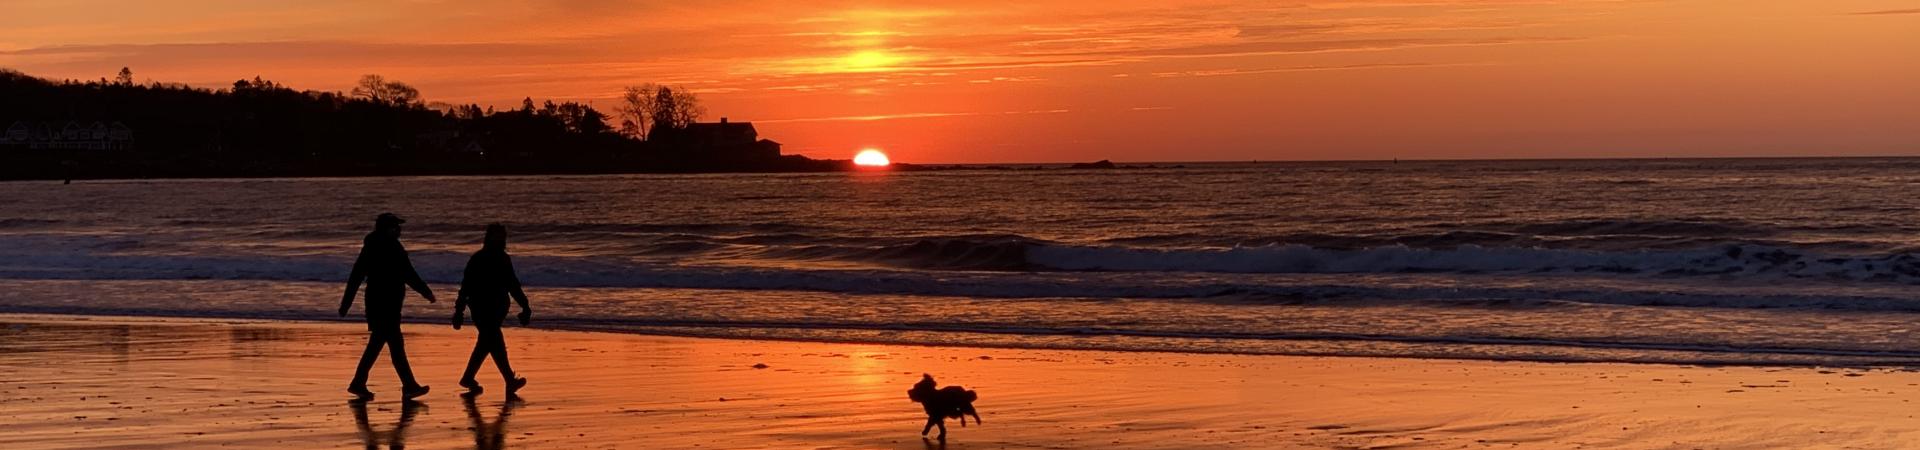 Gooches Beach sunrise emphasizing togetherness